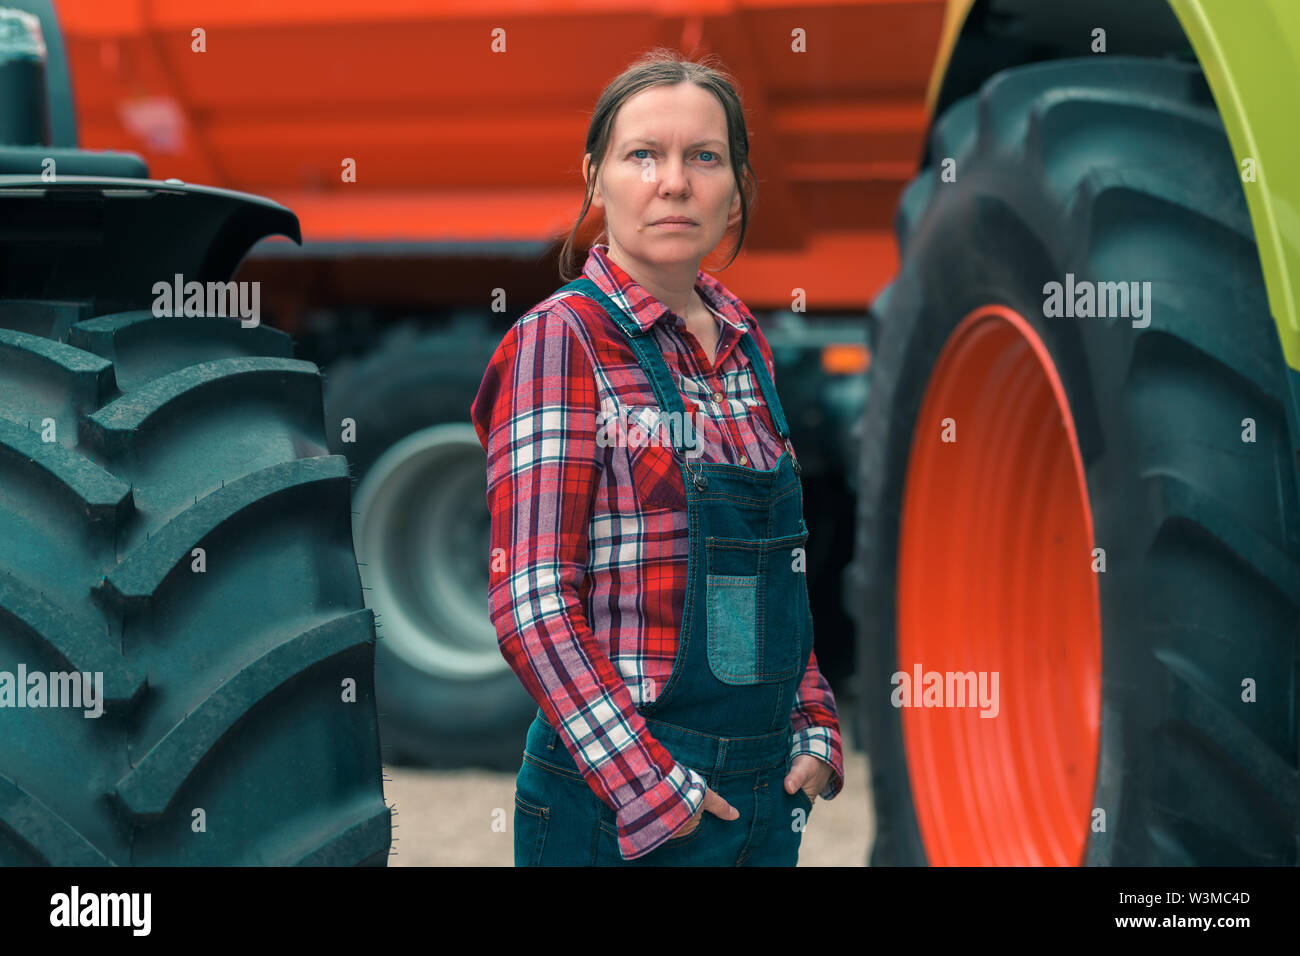 La productrice et le tracteur. Femme men's job concept. Travailleur agricole féminin posant devant des machines agricoles. Banque D'Images